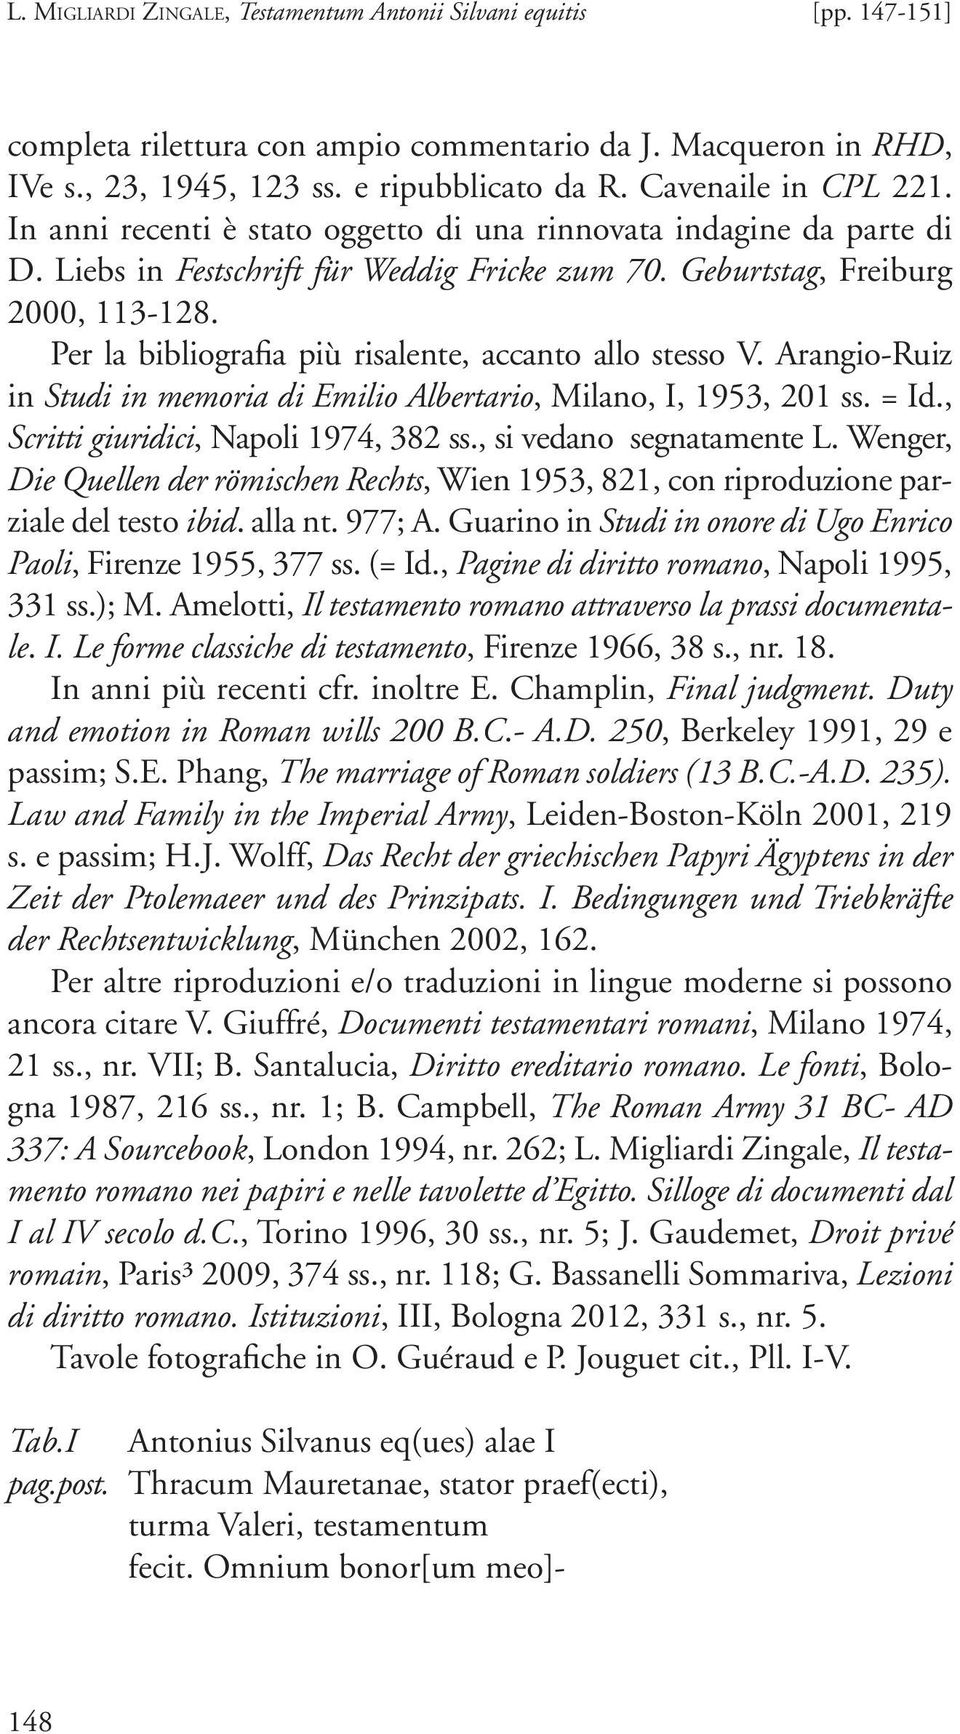 Per la bibliografia più risalente, accanto allo stesso V. Arangio-Ruiz in Studi in memoria di Emilio Albertario, Milano, I, 1953, 201 ss. = Id., Scritti giuridici, Napoli 1974, 382 ss.